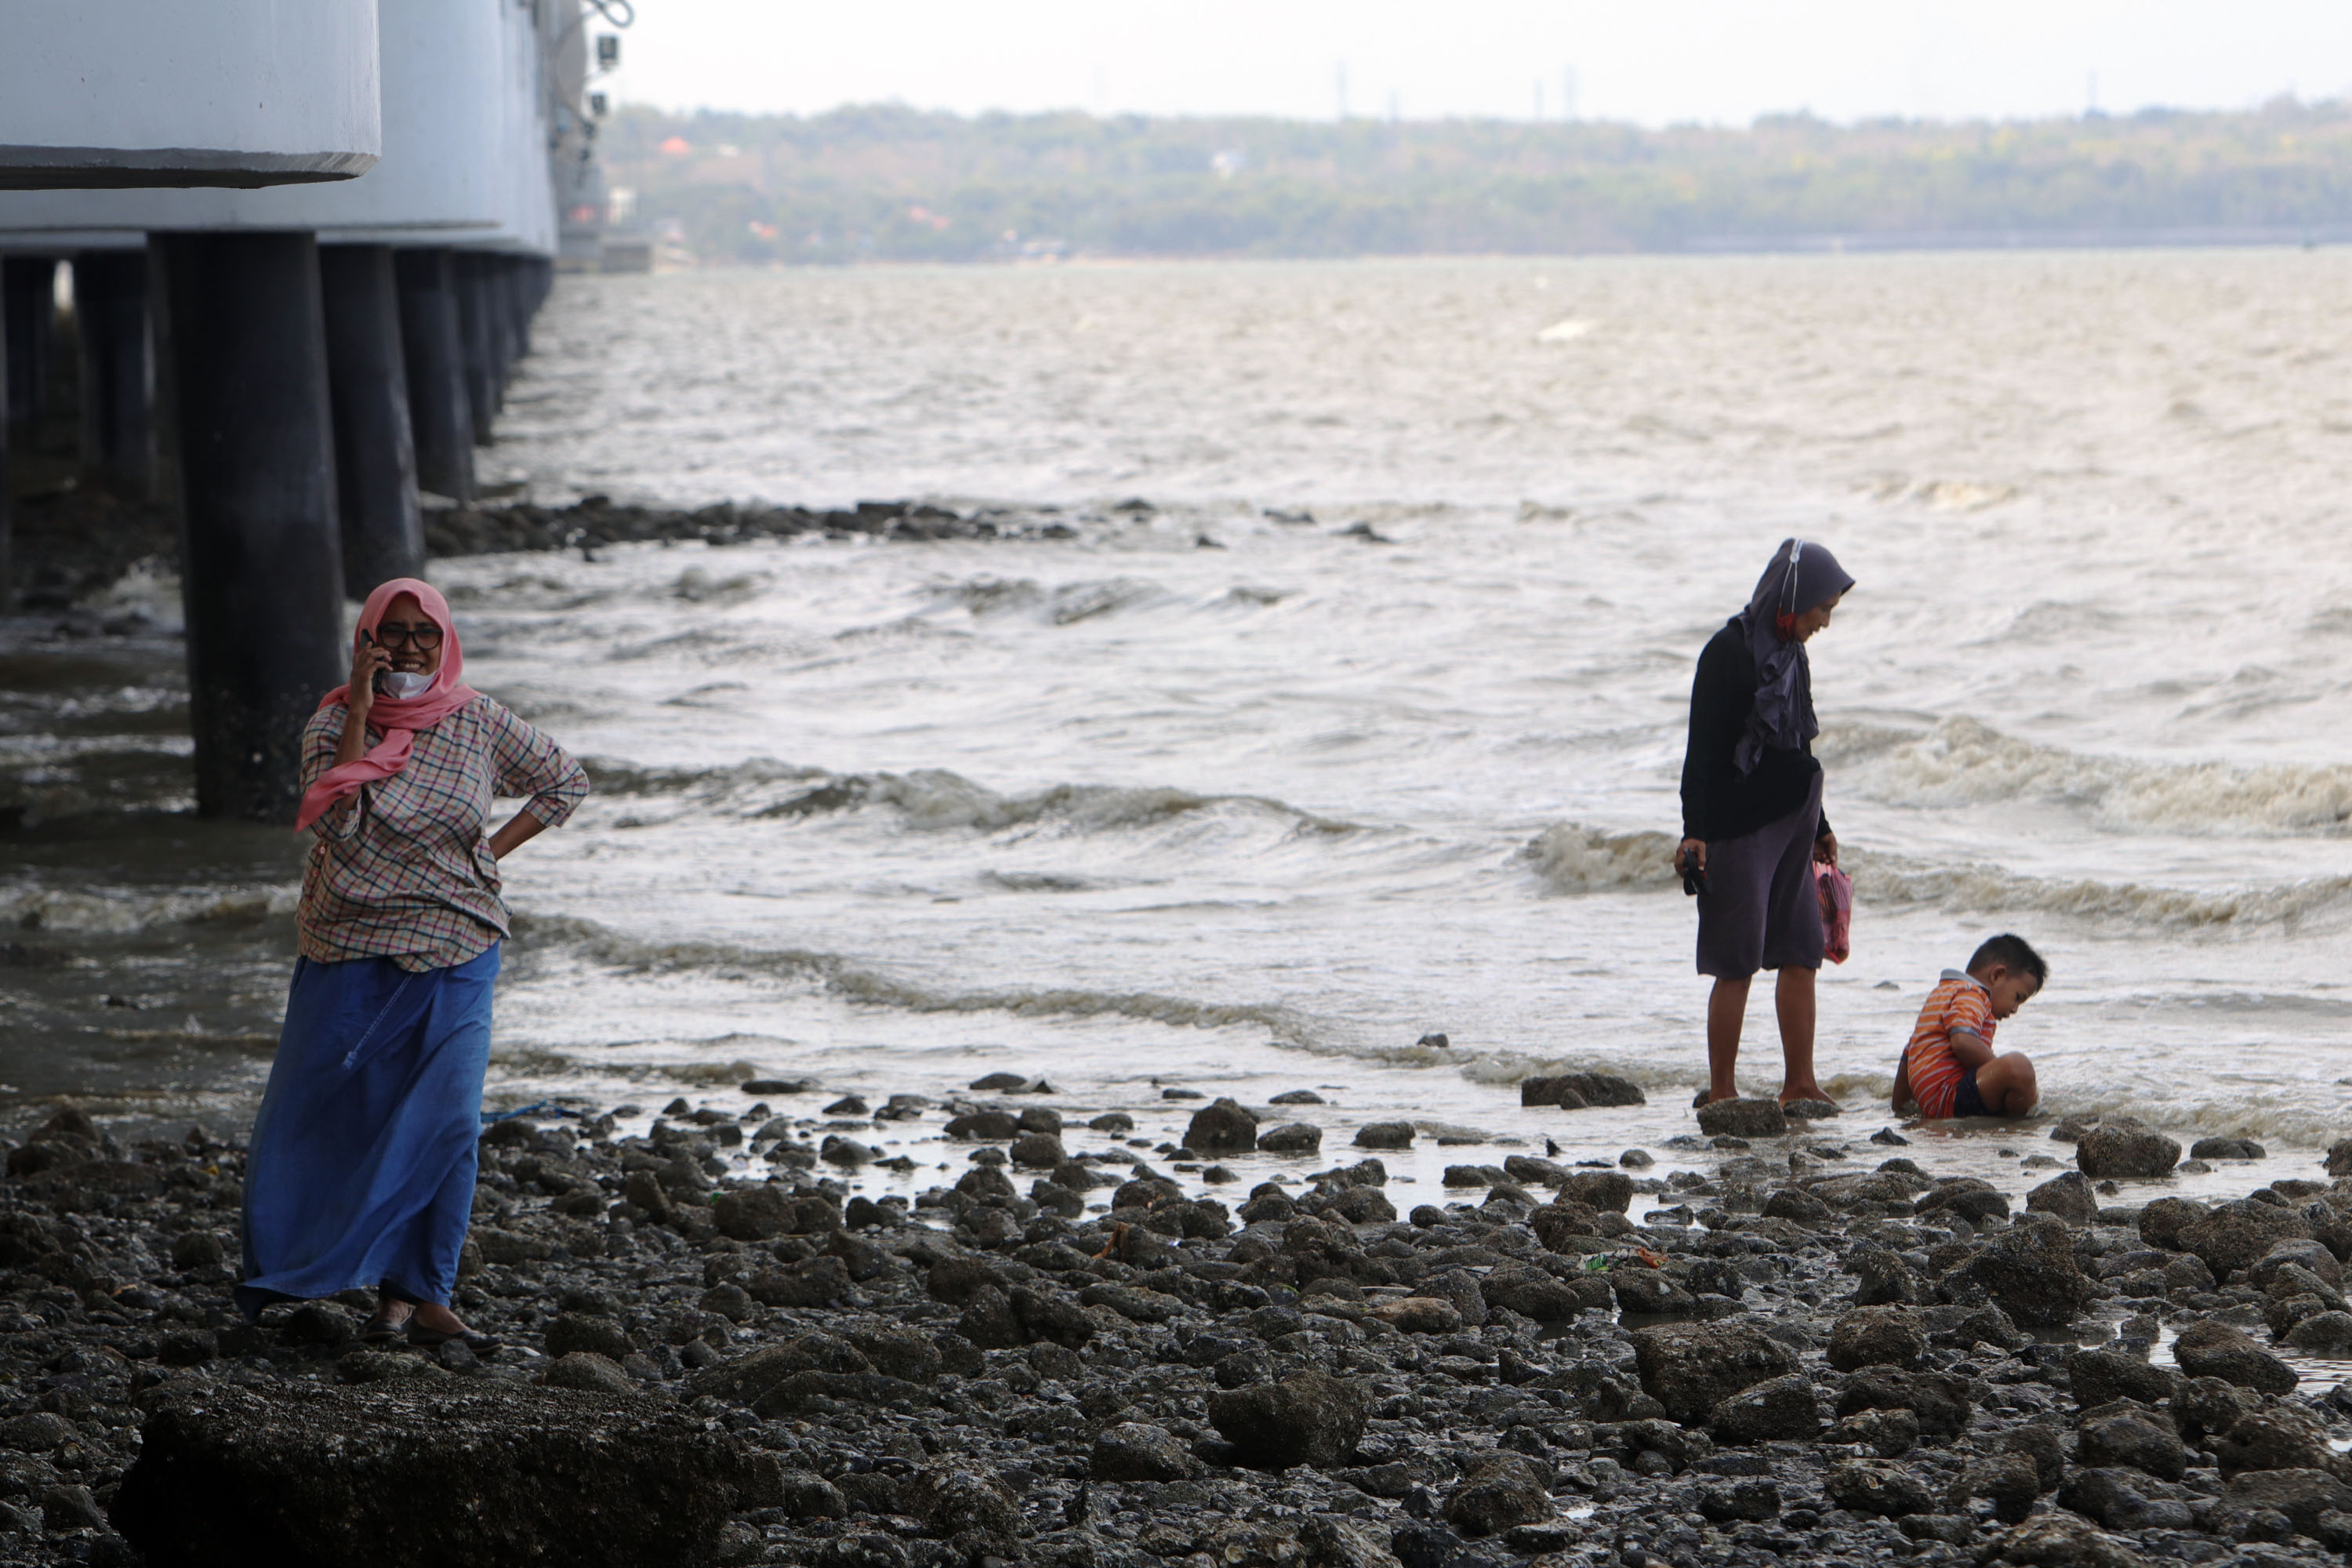 KOMUNIKASI: Warga melakukan panggilan saat menikmati waktu di pantai kaki jembatan Suramadu, Surabaya, Rabu (8/9). Jaringan telkomsel 5G diharapkan bisa menghadirkan akses konektivitas digital terdepan yang akan semakin yang lebih luas, termasuk dalam hal